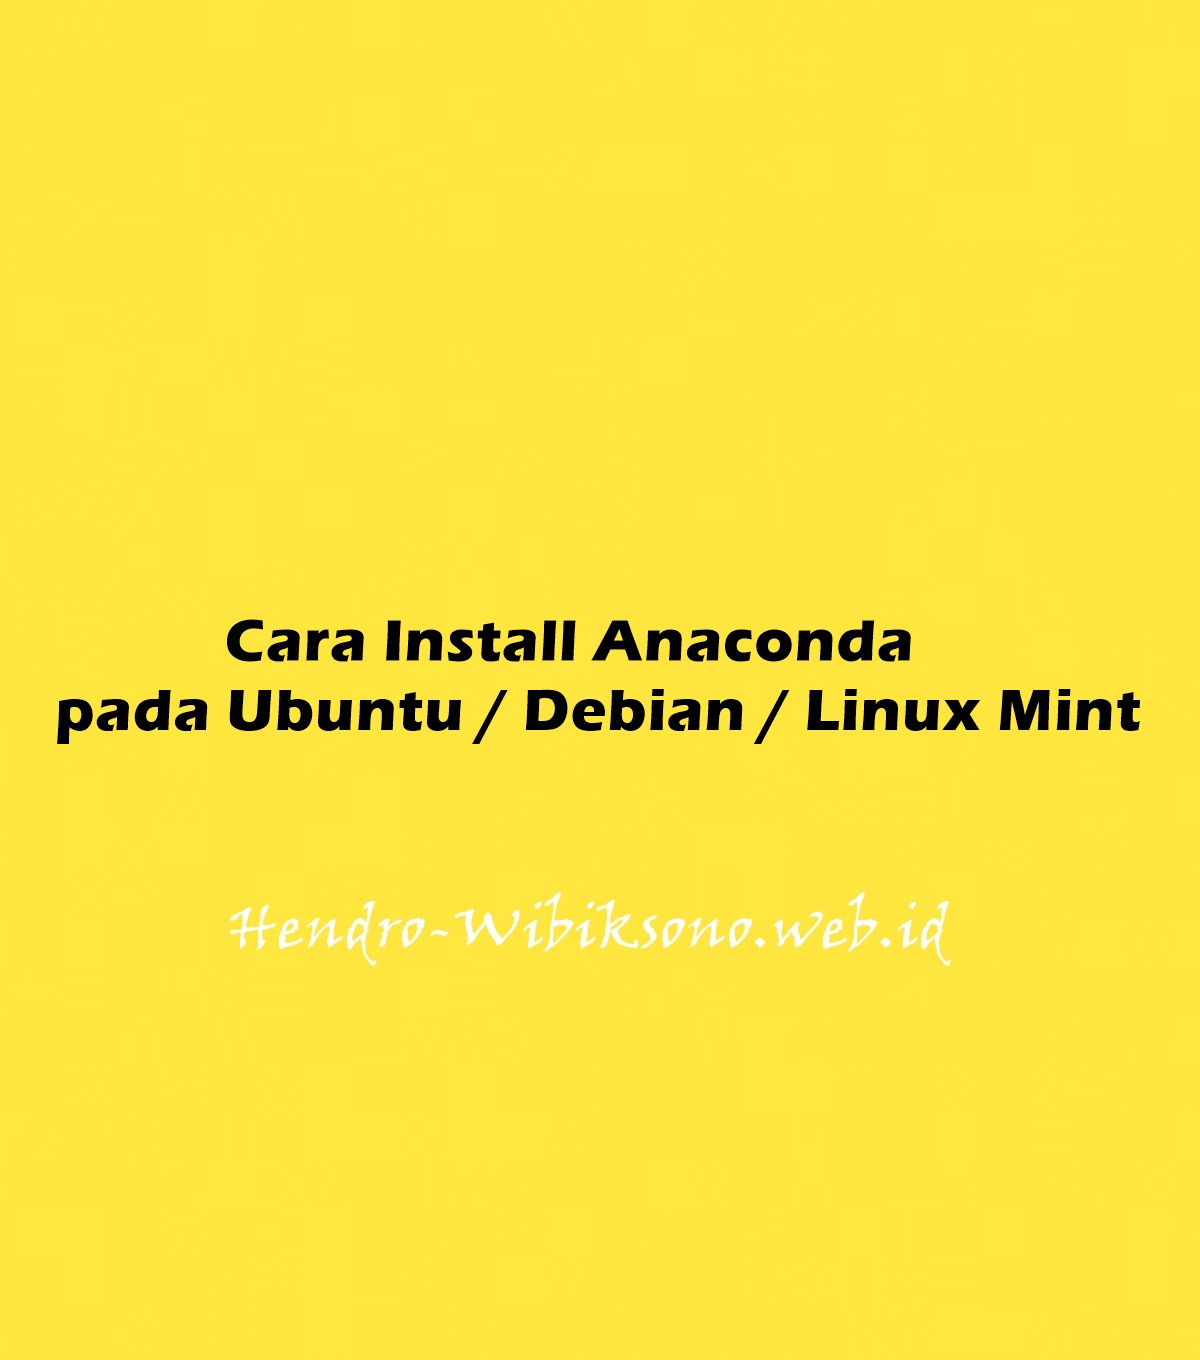 download anaconda for ubuntu